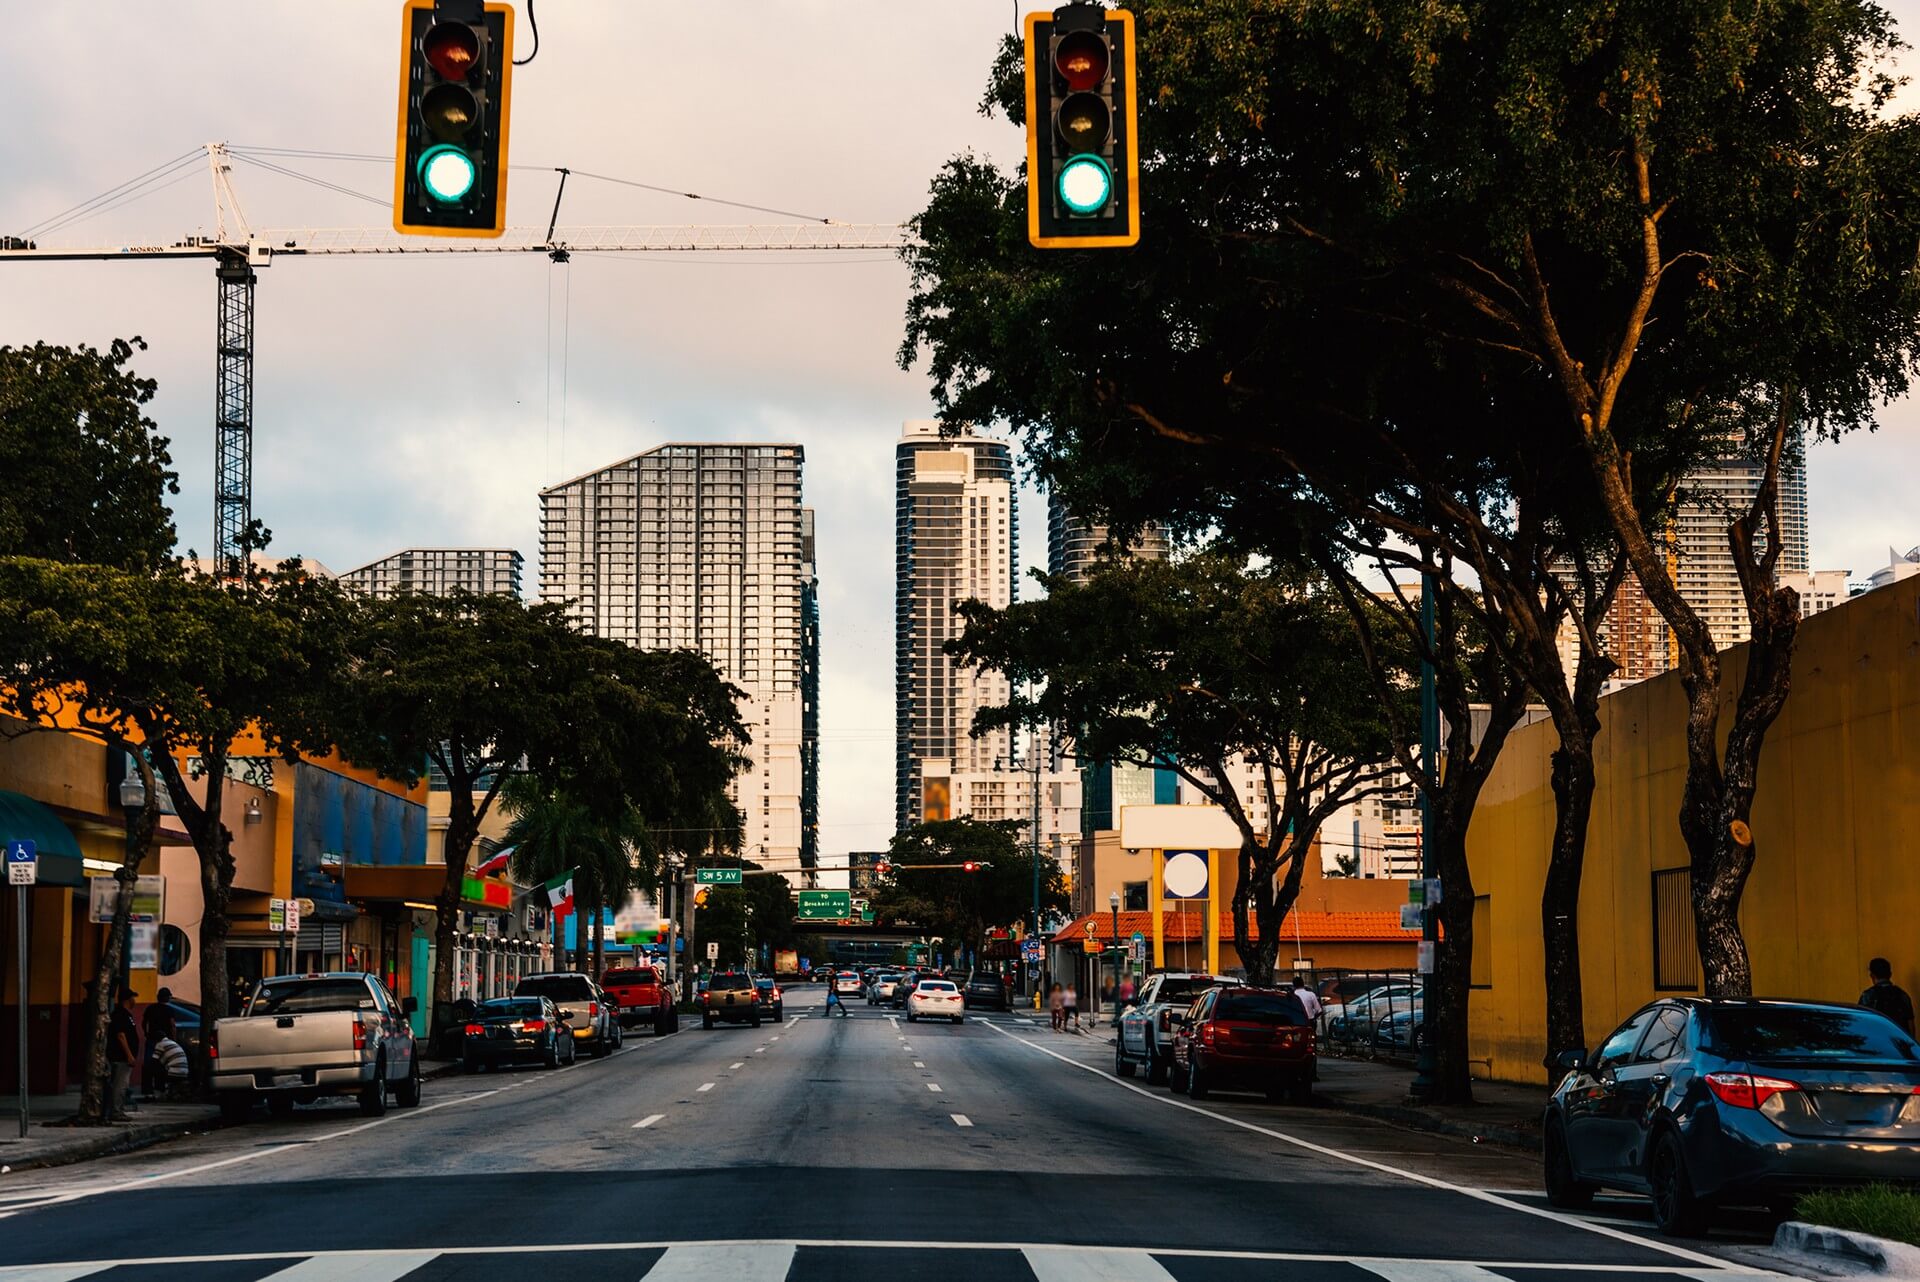 Semafori nel quartiere storico di Little Havana a Miami. Florida meridionale, USA
